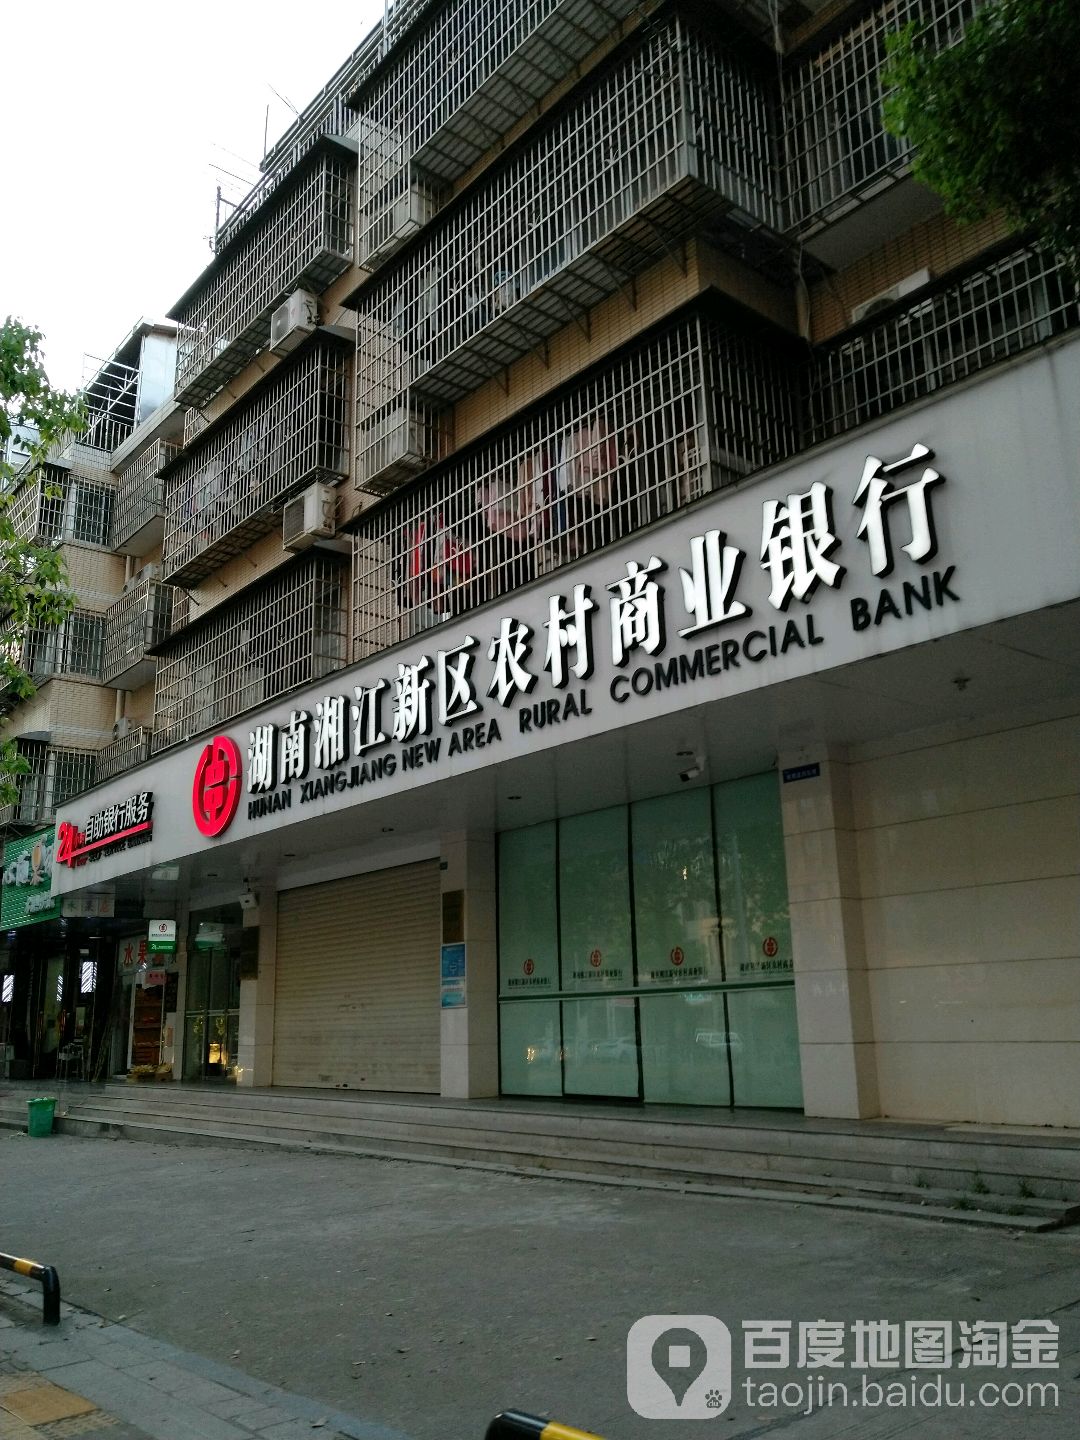 湖南湘江新区农村商银行行24小时自助银行(观沙岭分理处)